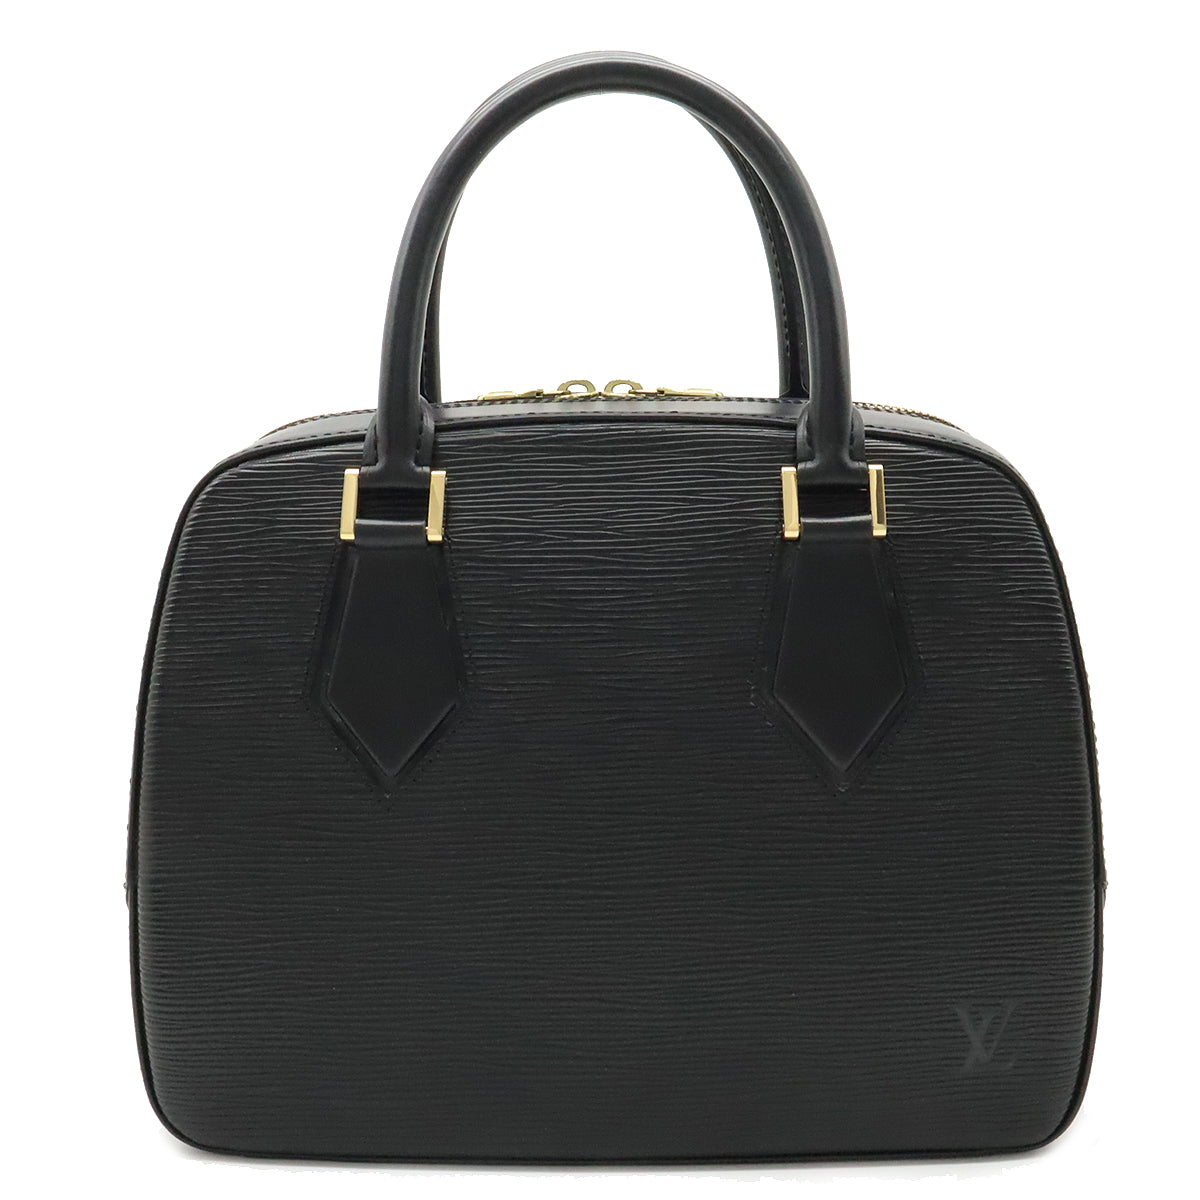 Louis Vuitton Alma Epi Mini Noir in Leather with Gold-tone - US